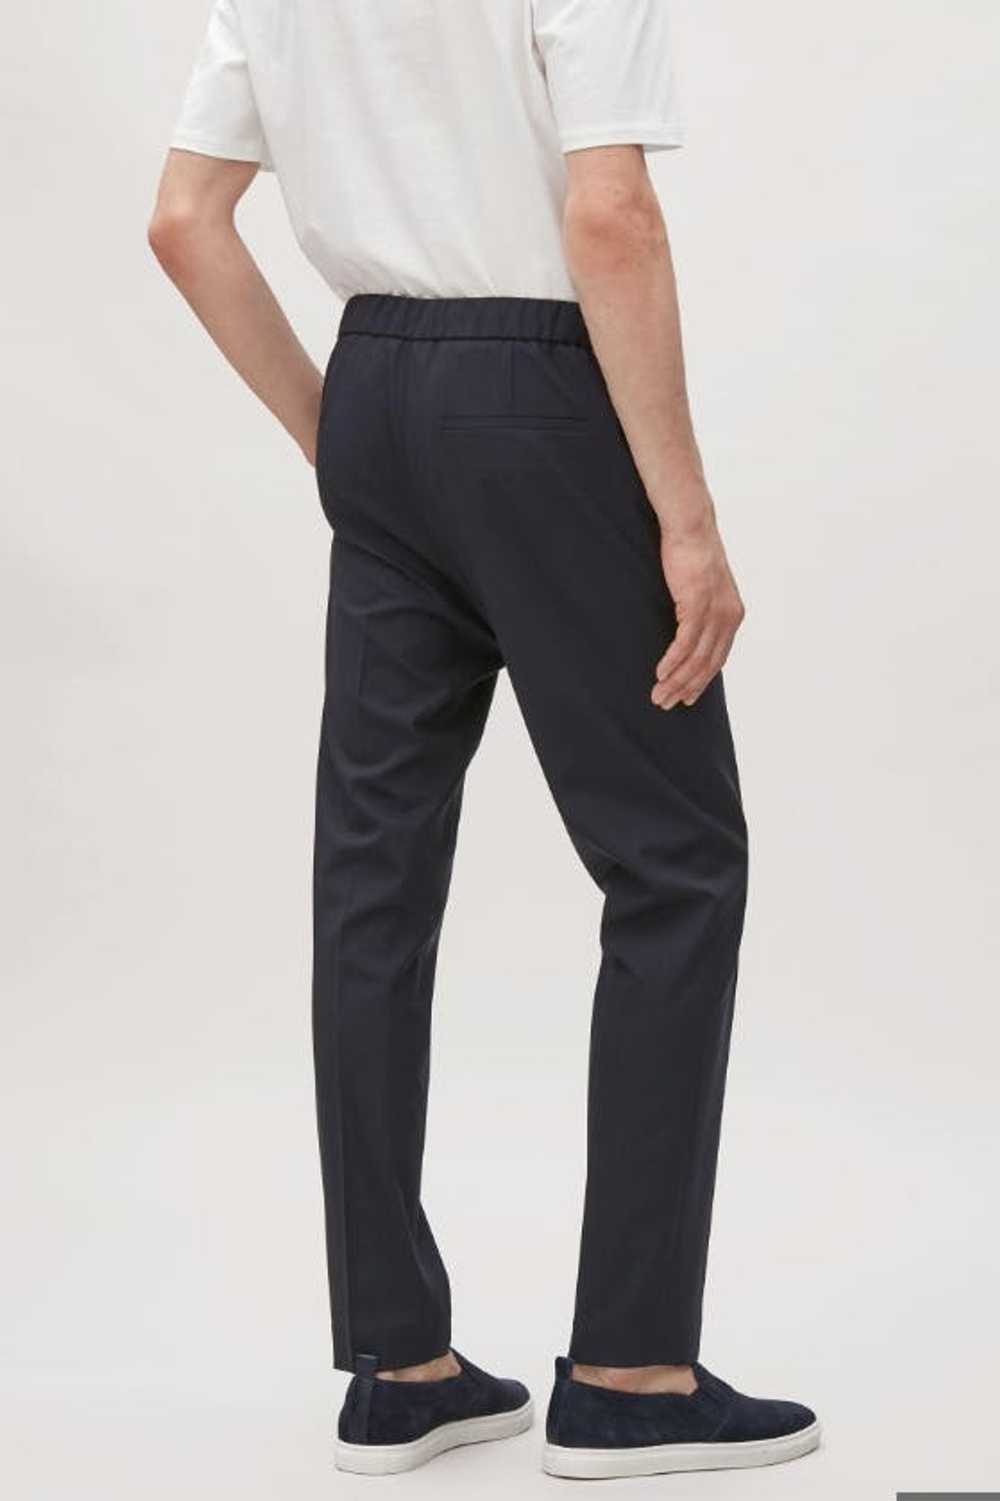 Cos Men's Black Wool Drawstring Tailored Pants - image 3